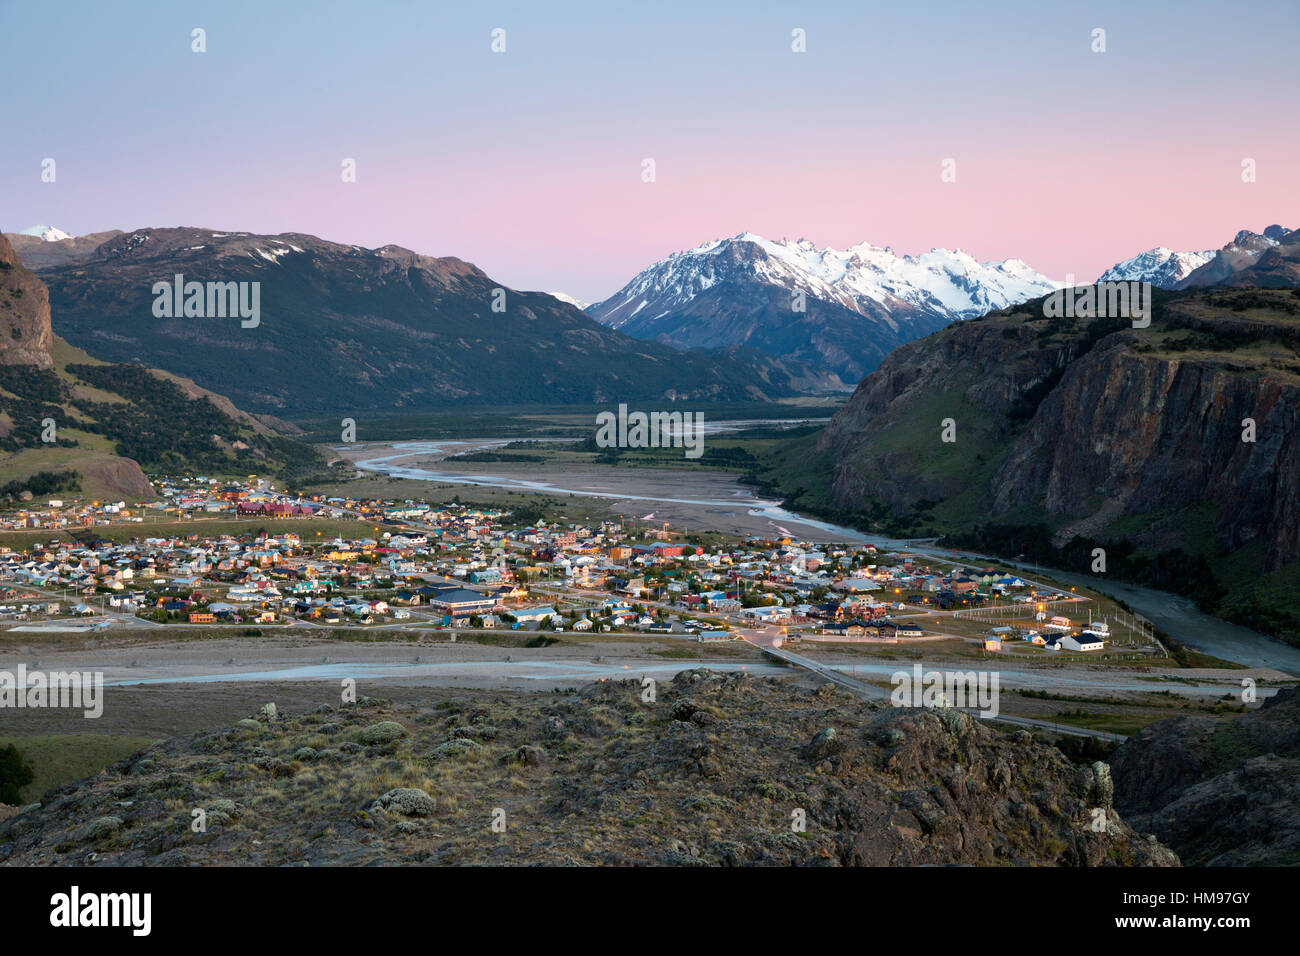 View over town of El Chalten and Rio de las Vueltas and Rio Fitz Roy, El Chalten, Patagonia, Argentina, South America Stock Photo